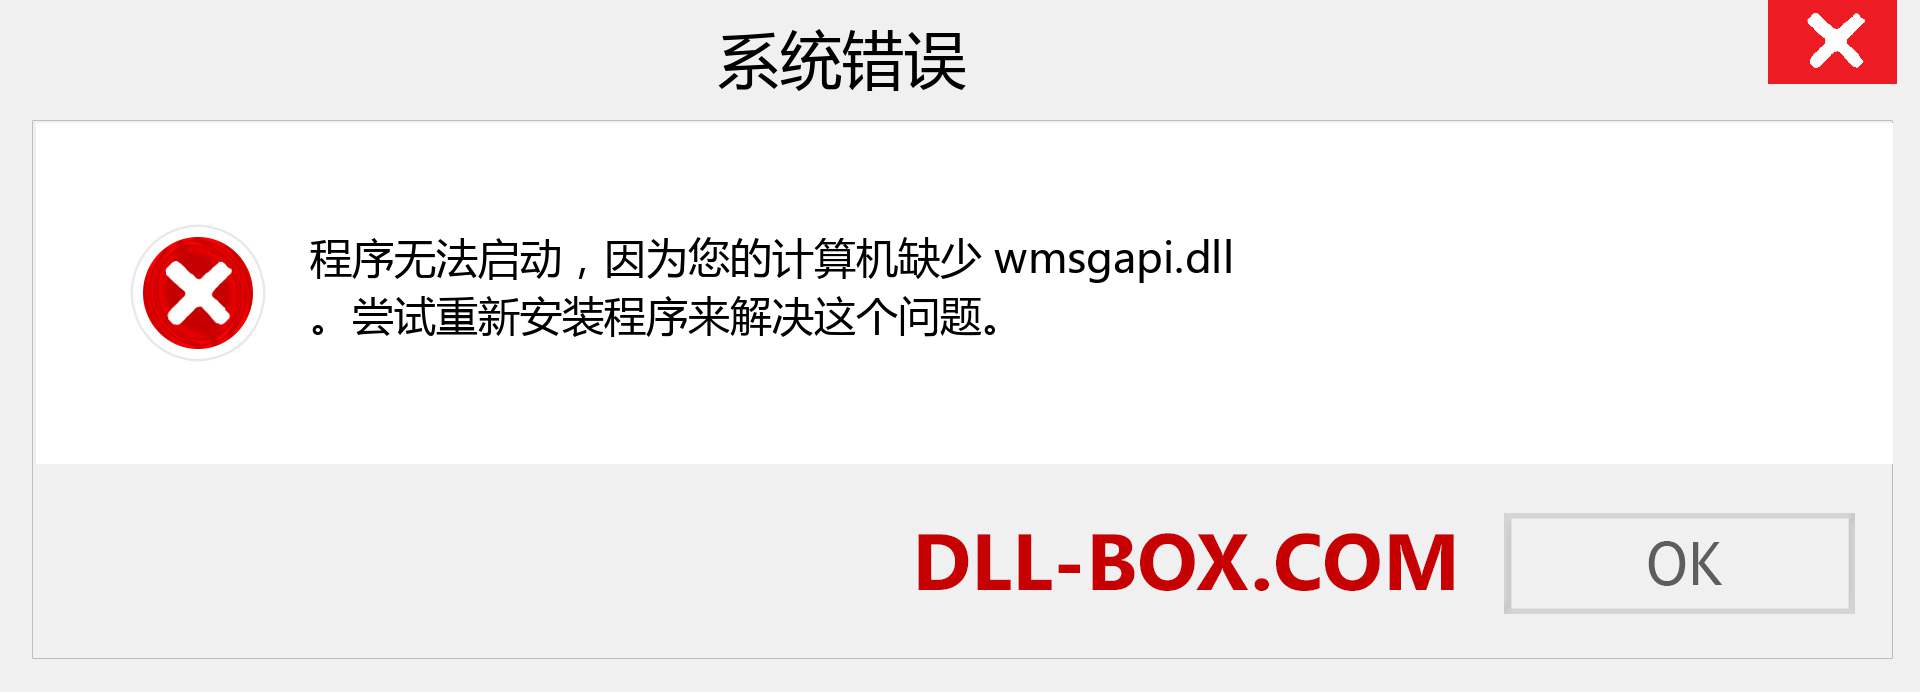 wmsgapi.dll 文件丢失？。 适用于 Windows 7、8、10 的下载 - 修复 Windows、照片、图像上的 wmsgapi dll 丢失错误